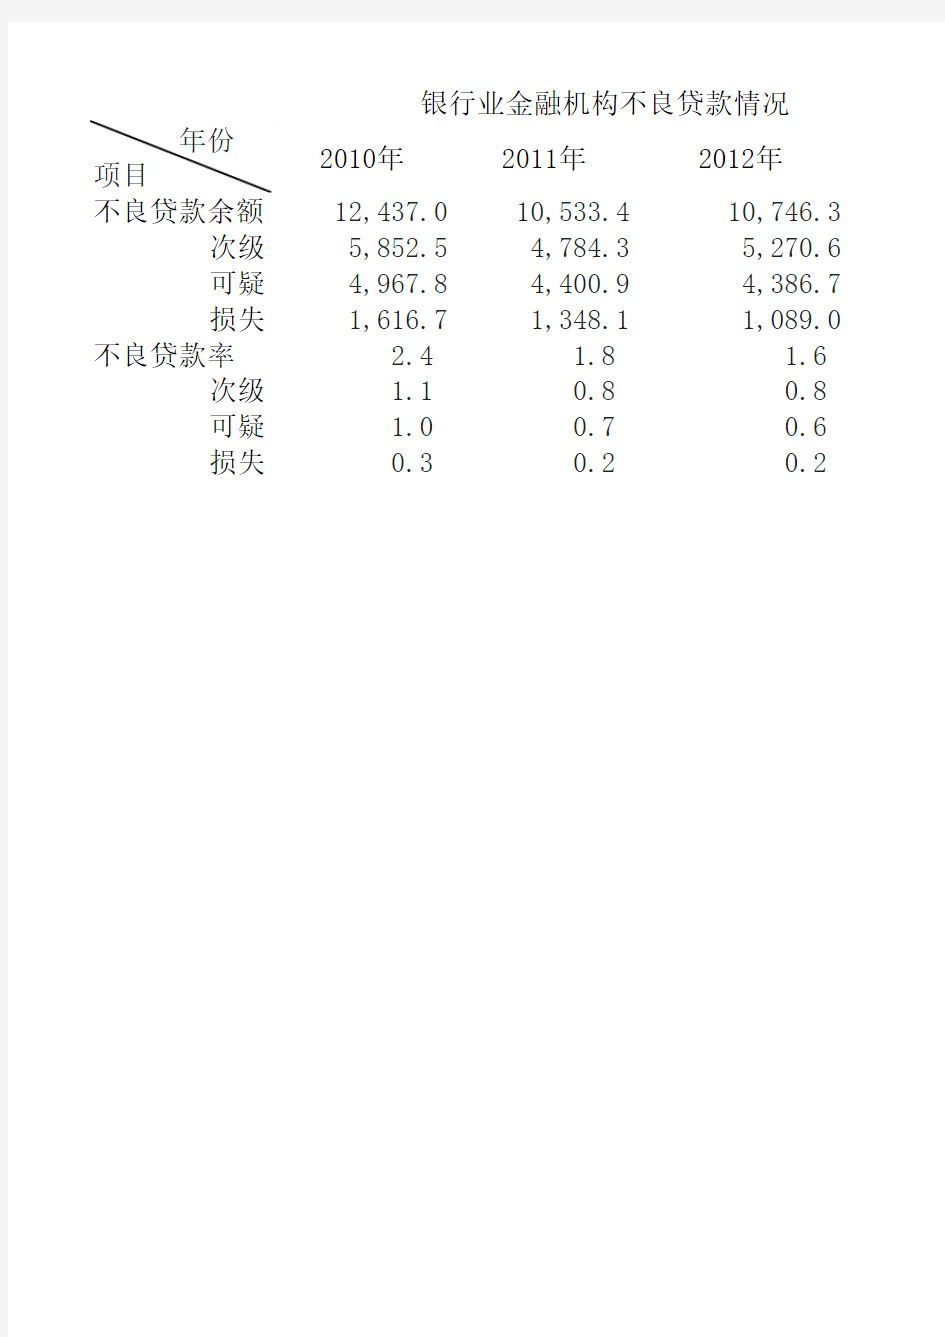 2006-2014商业银行不良贷款情况表